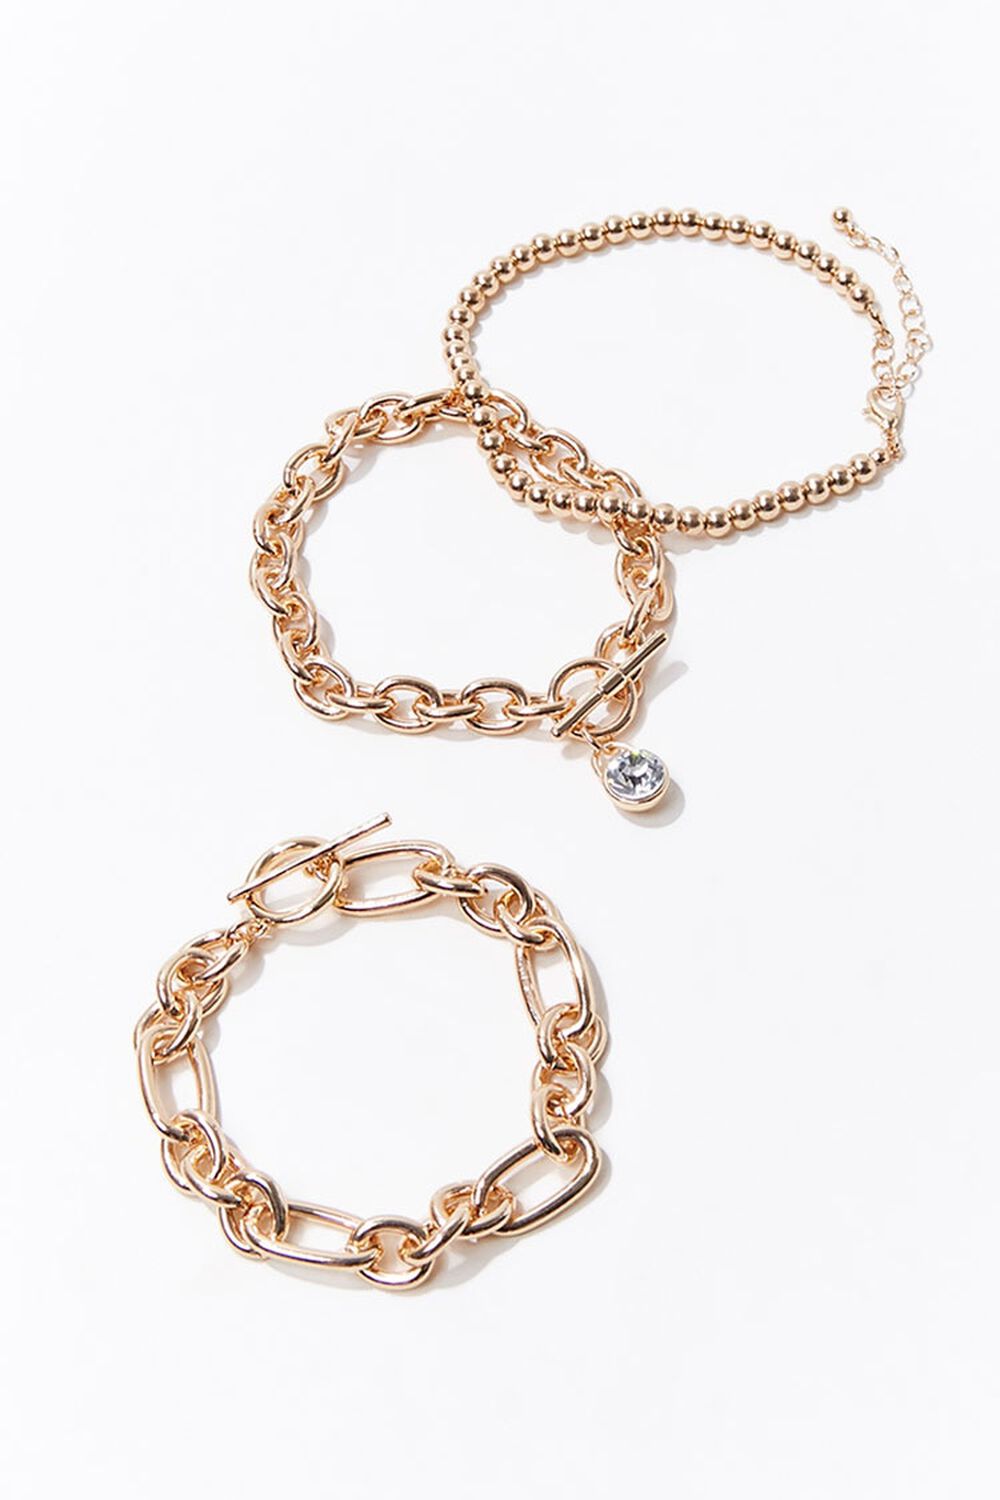 GOLD Faux Gem Chain Bracelet Set, image 1